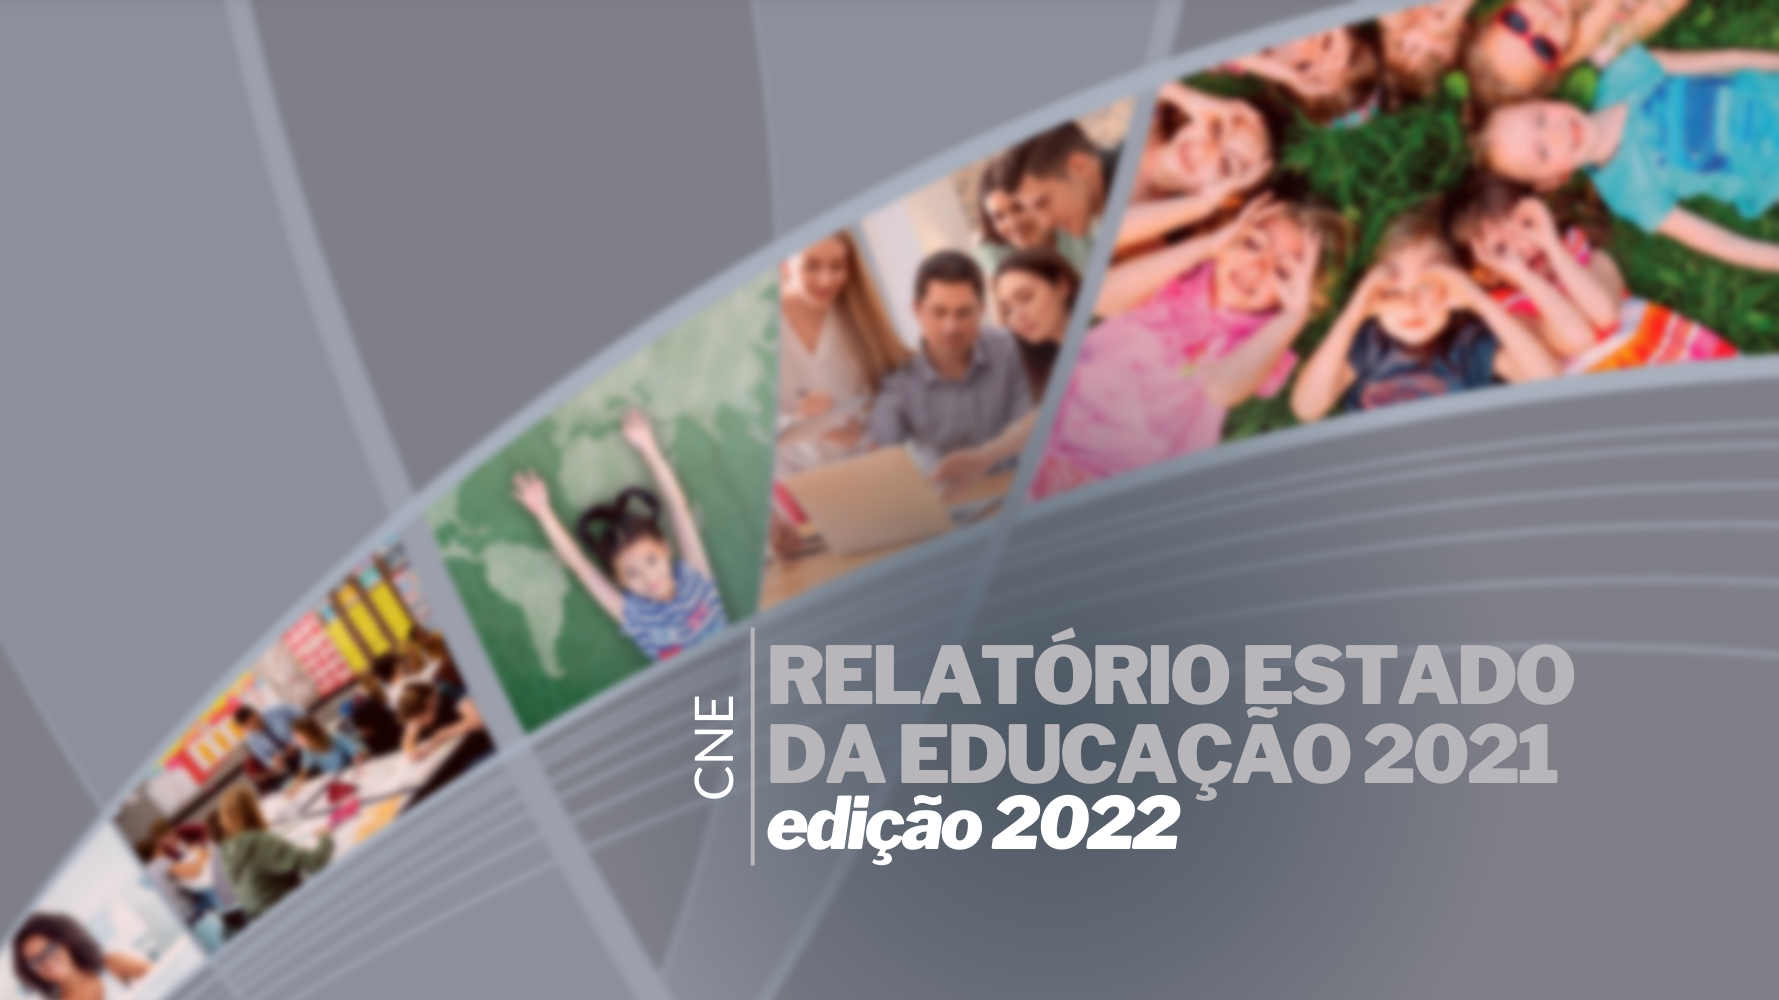 RELATÓRIO ESTADO DA EDUCAÇÃO 2021